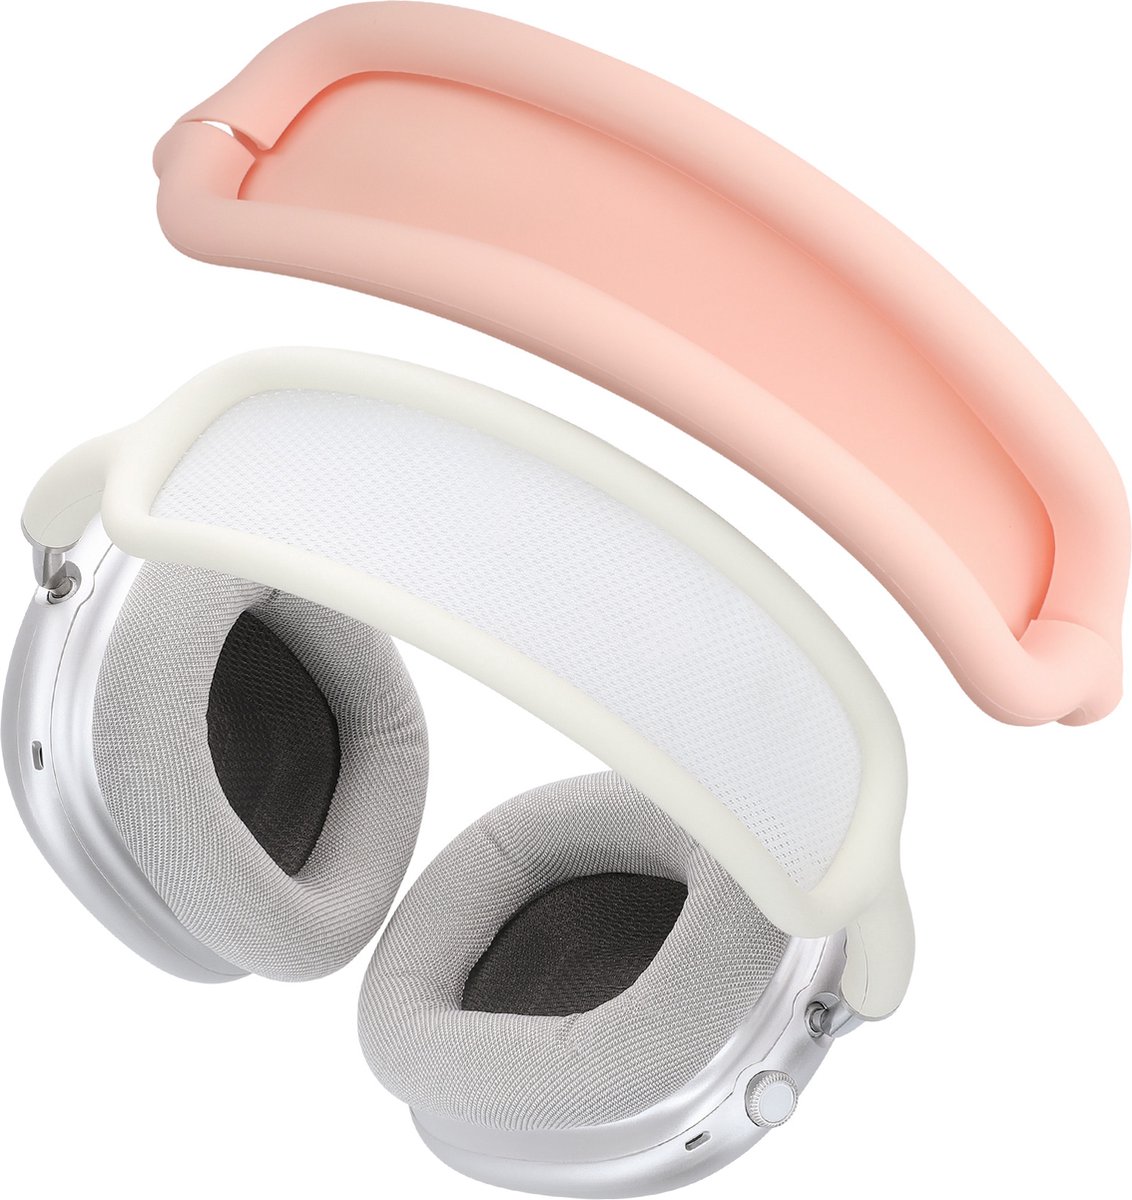 kwmobile band voor koptelefoon - geschikt voor AppleAirpods Max - Hoofdband cover van zacht siliconen materiaal - In oudroze